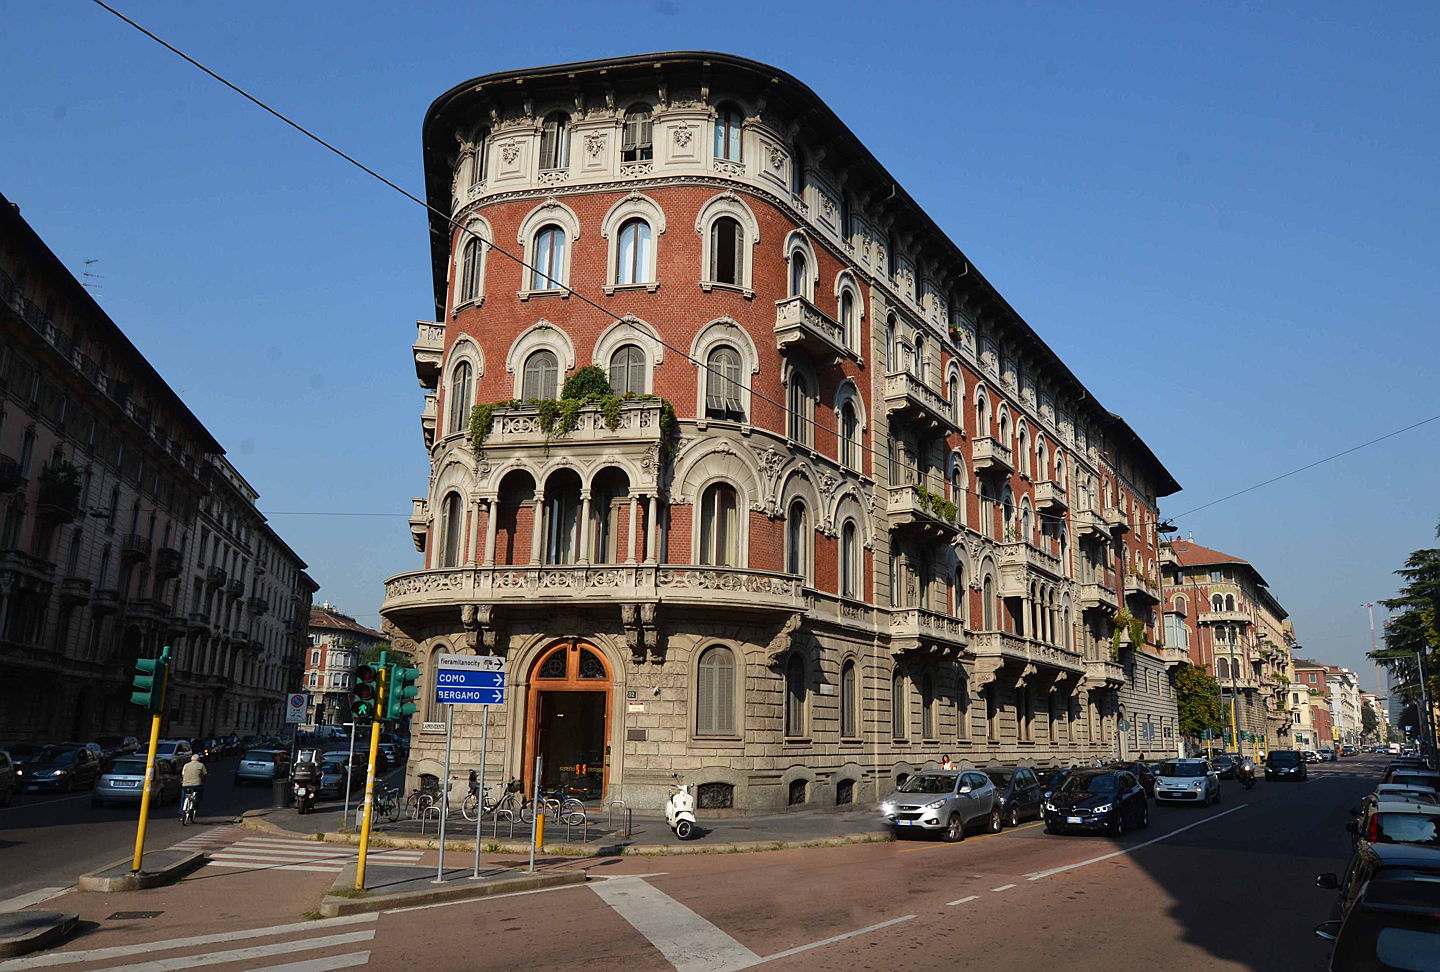  Mailand
- Appartamento_ViaBoccaccio_Palazzo.jpg